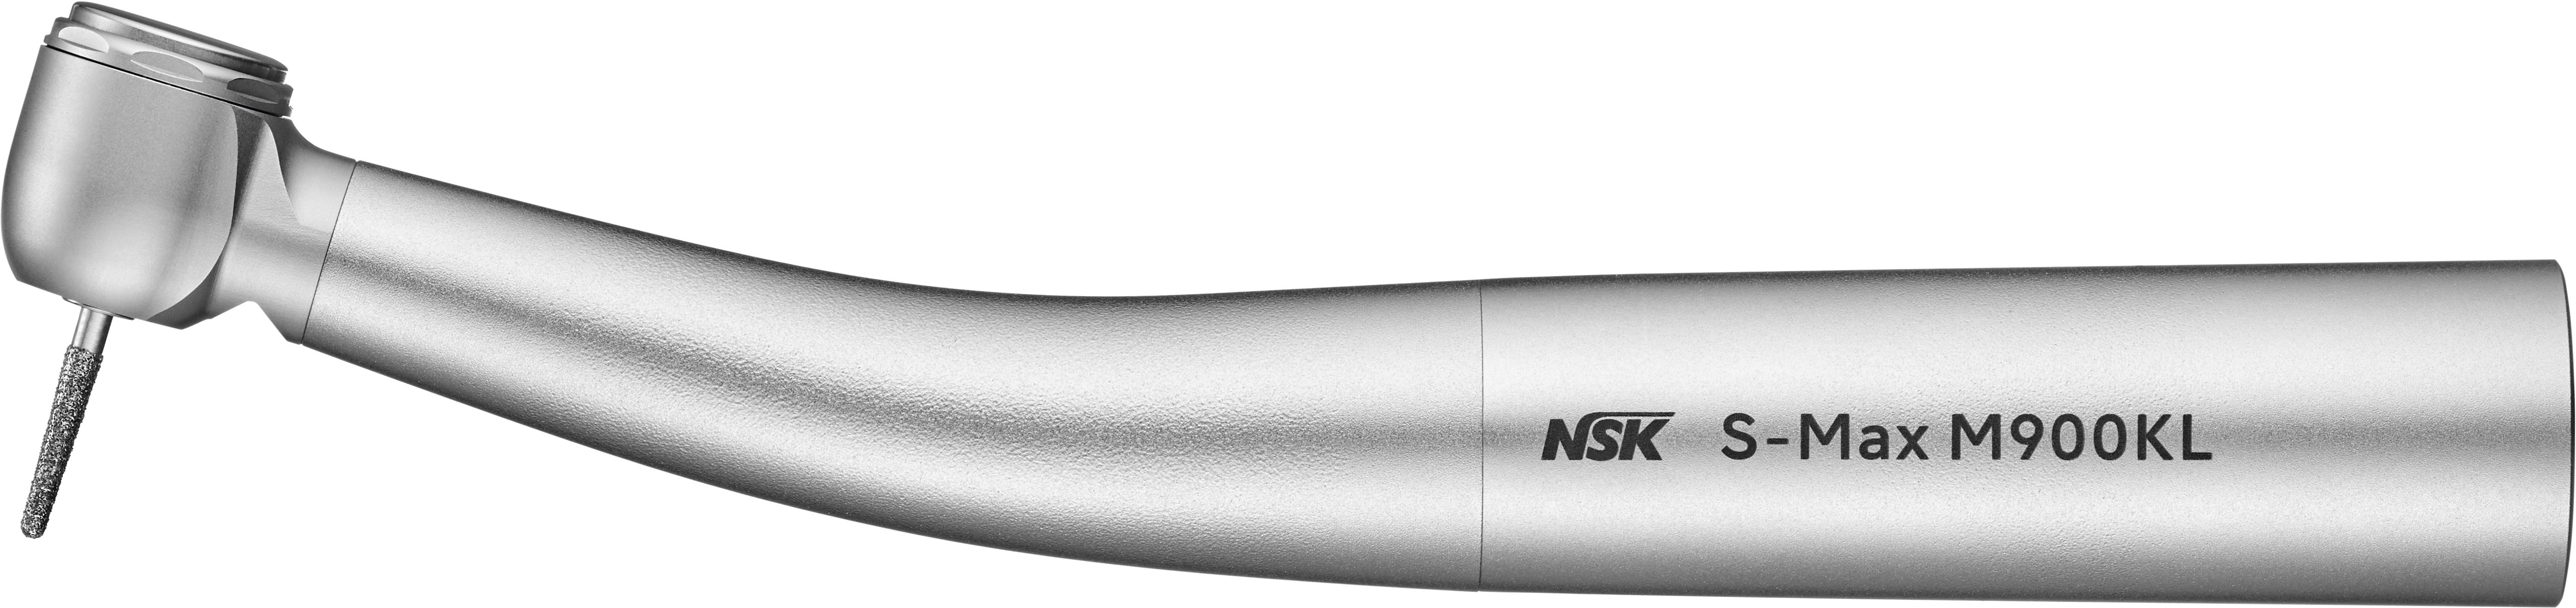 NSK S-Max M900KL, Lichtturbine, KaVo MULTIflex-Anschluss